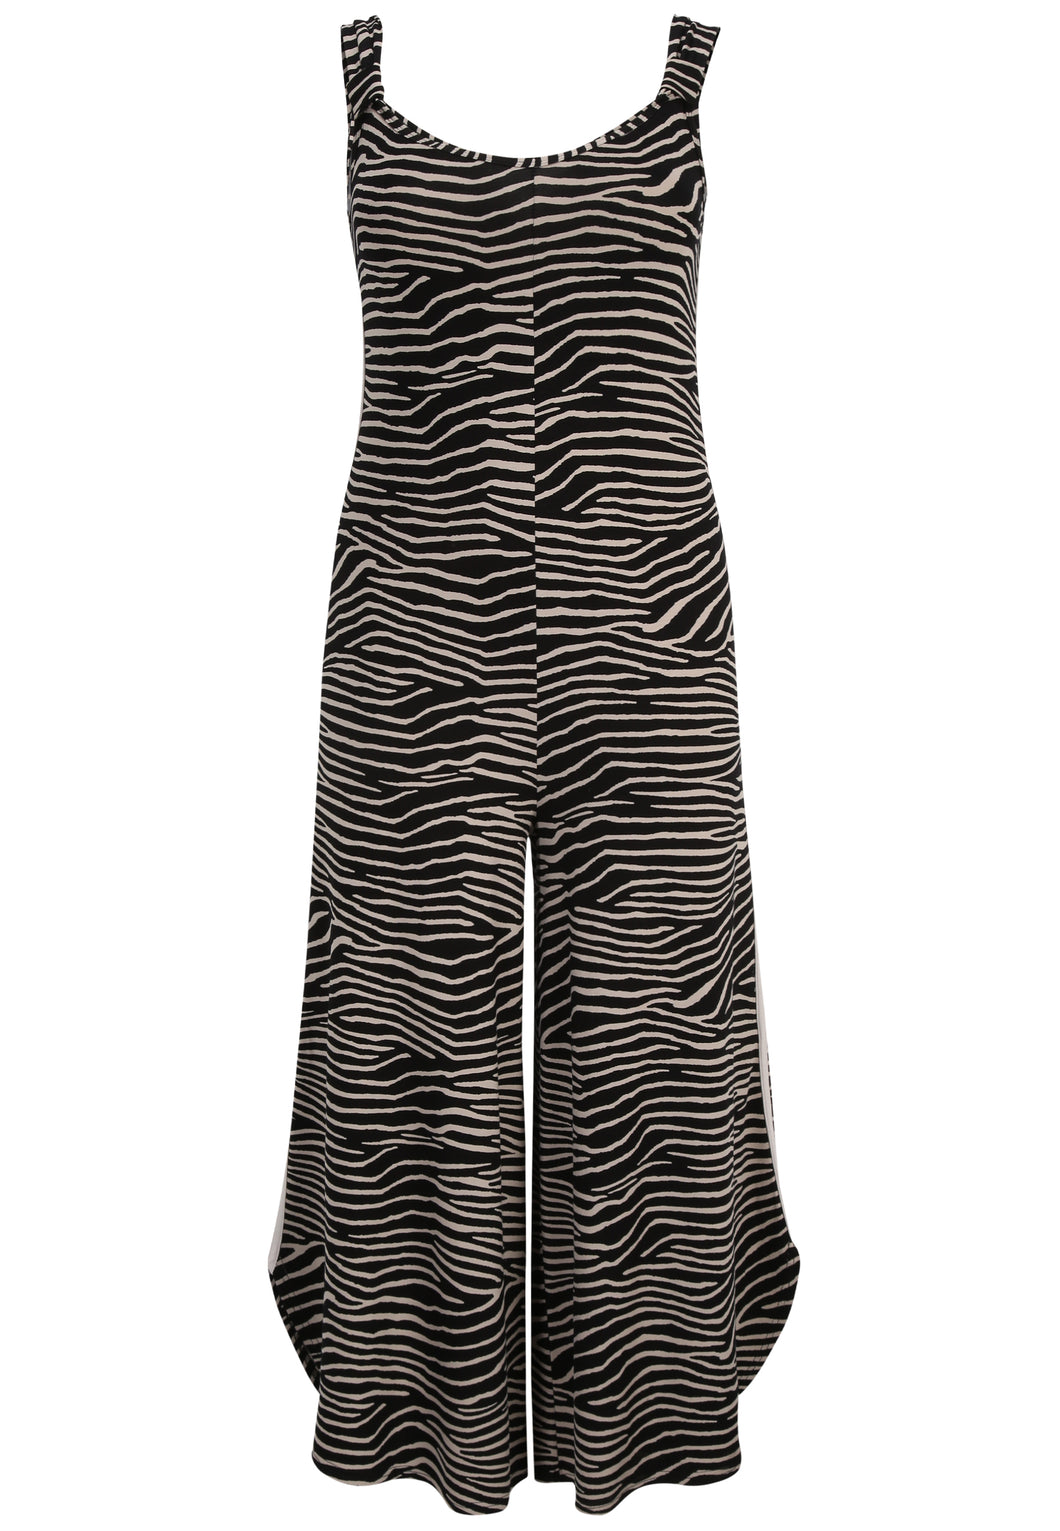 Doris Streich Jumpsuit mit schwarz taupe Zebra-Print aus Jersey Gr 44 - 54